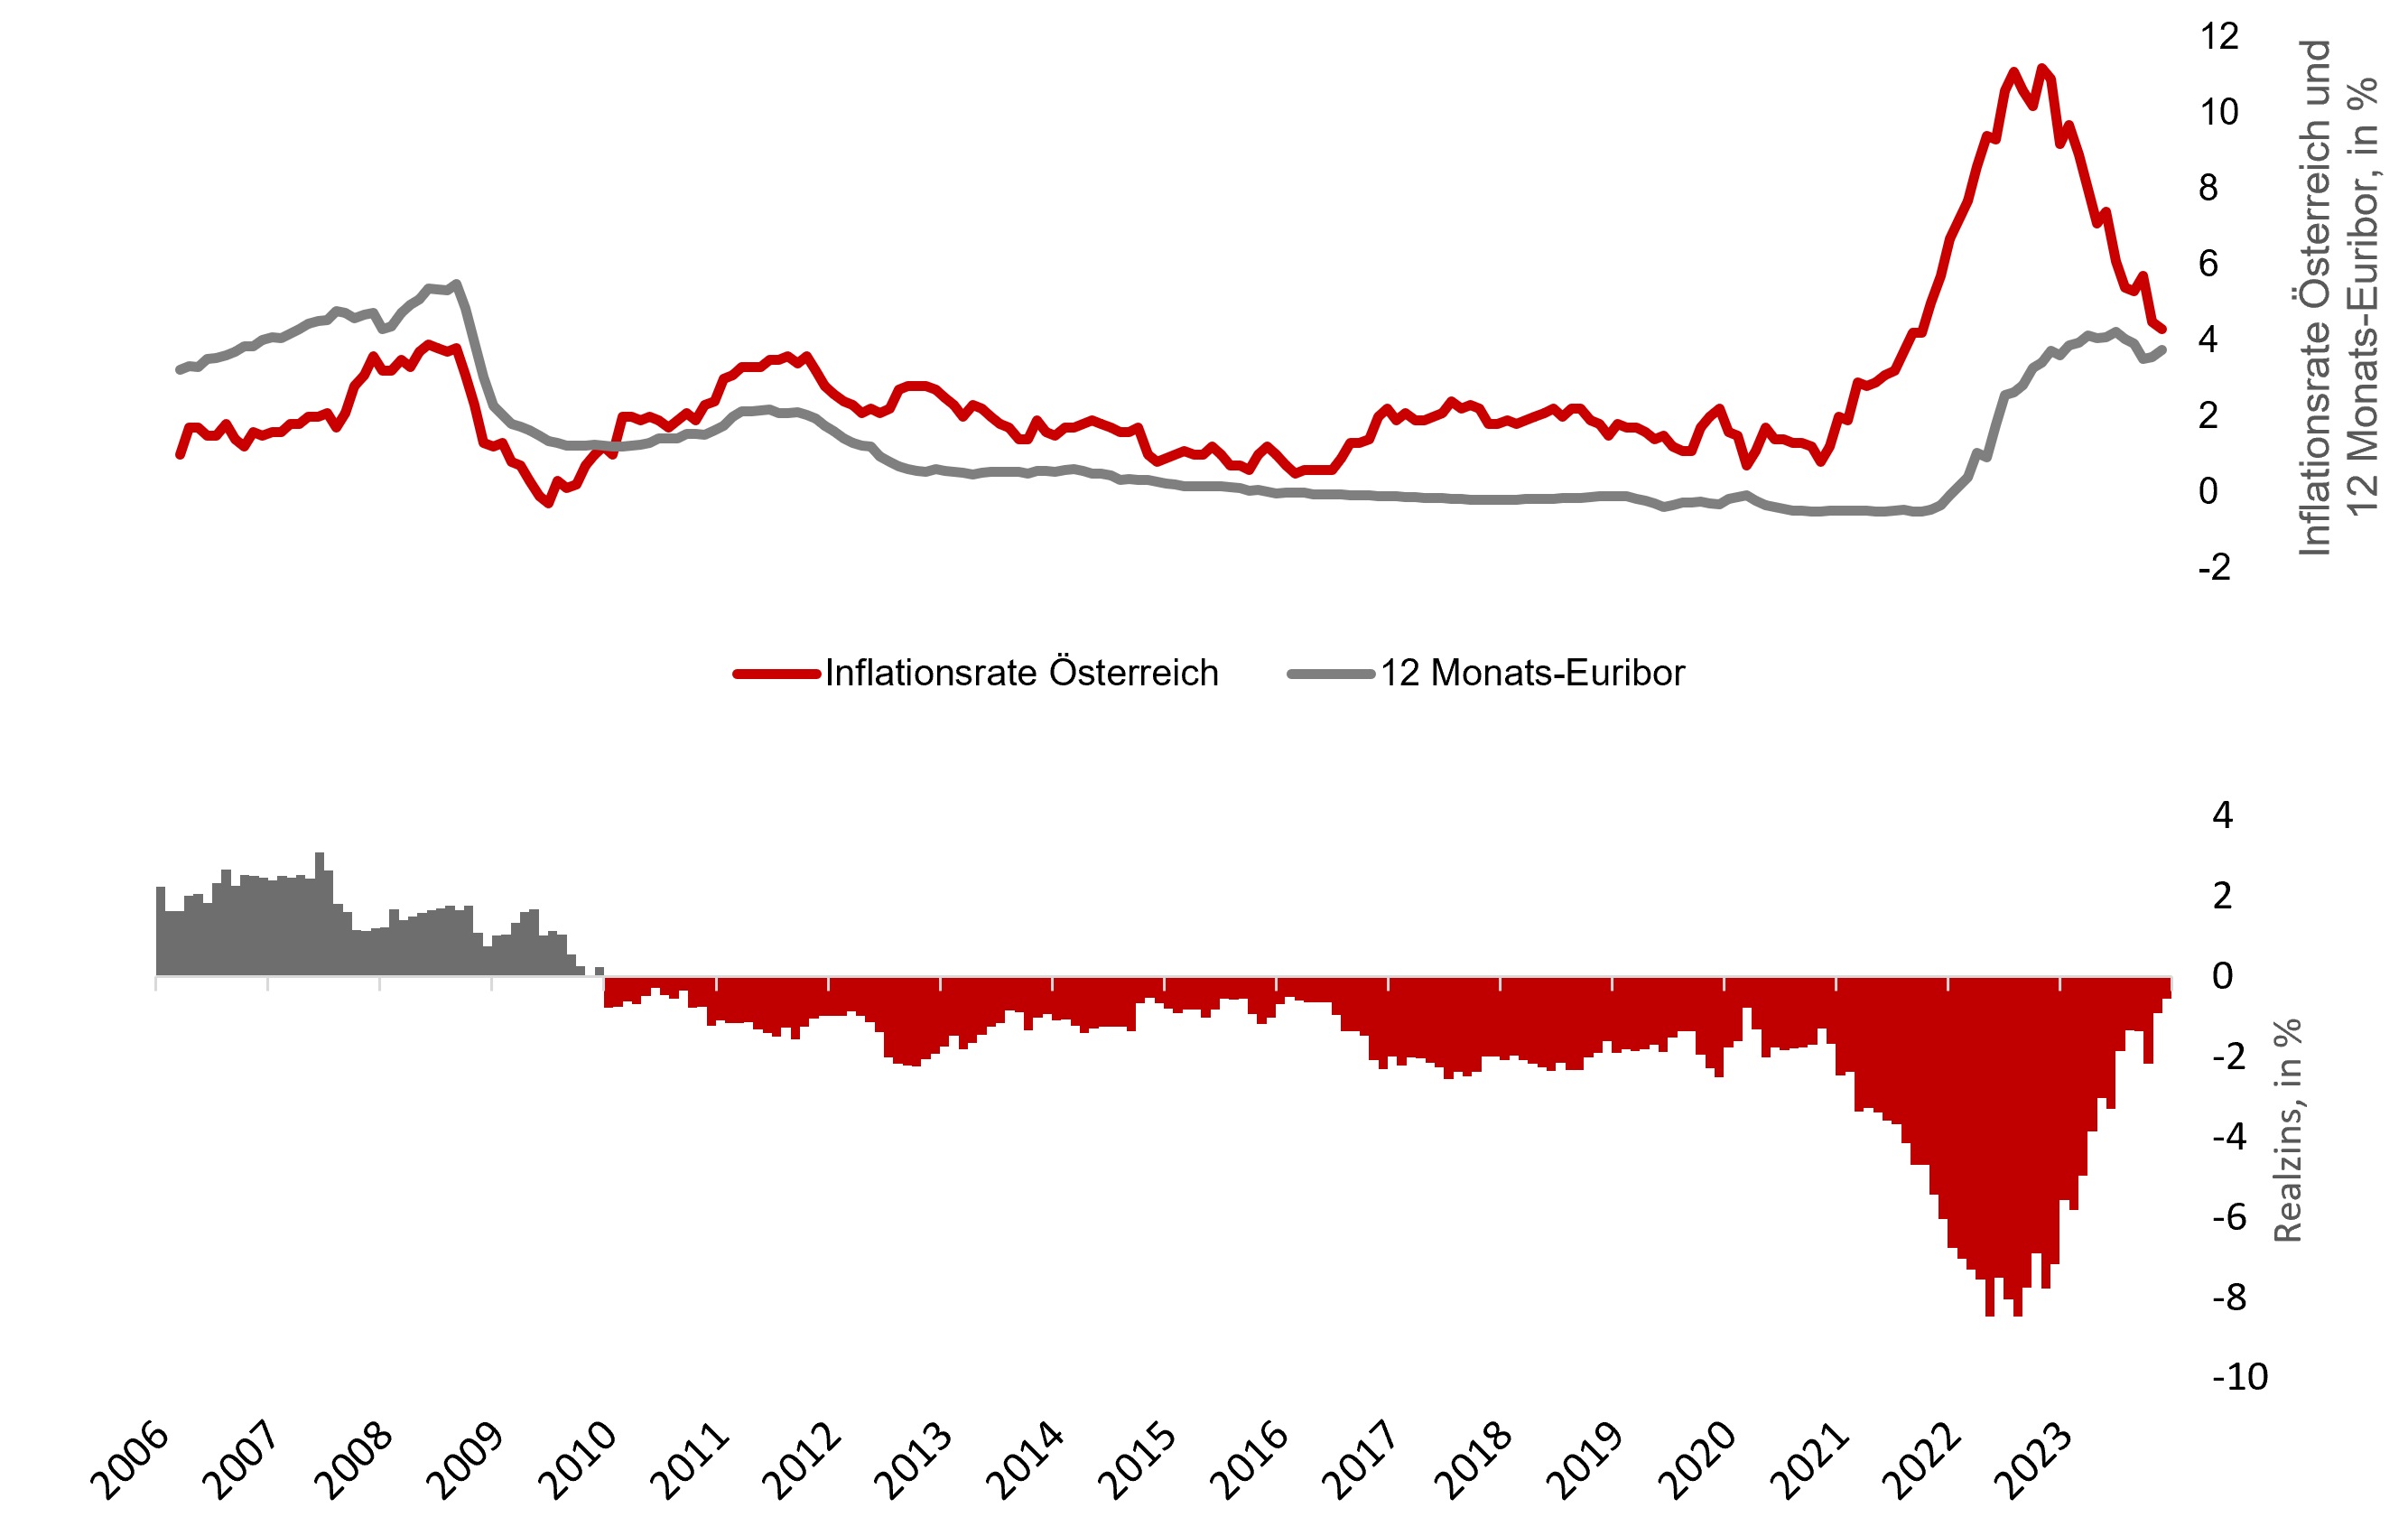 Inflationsrate Österreich und 12 Monats-Euribor, in %